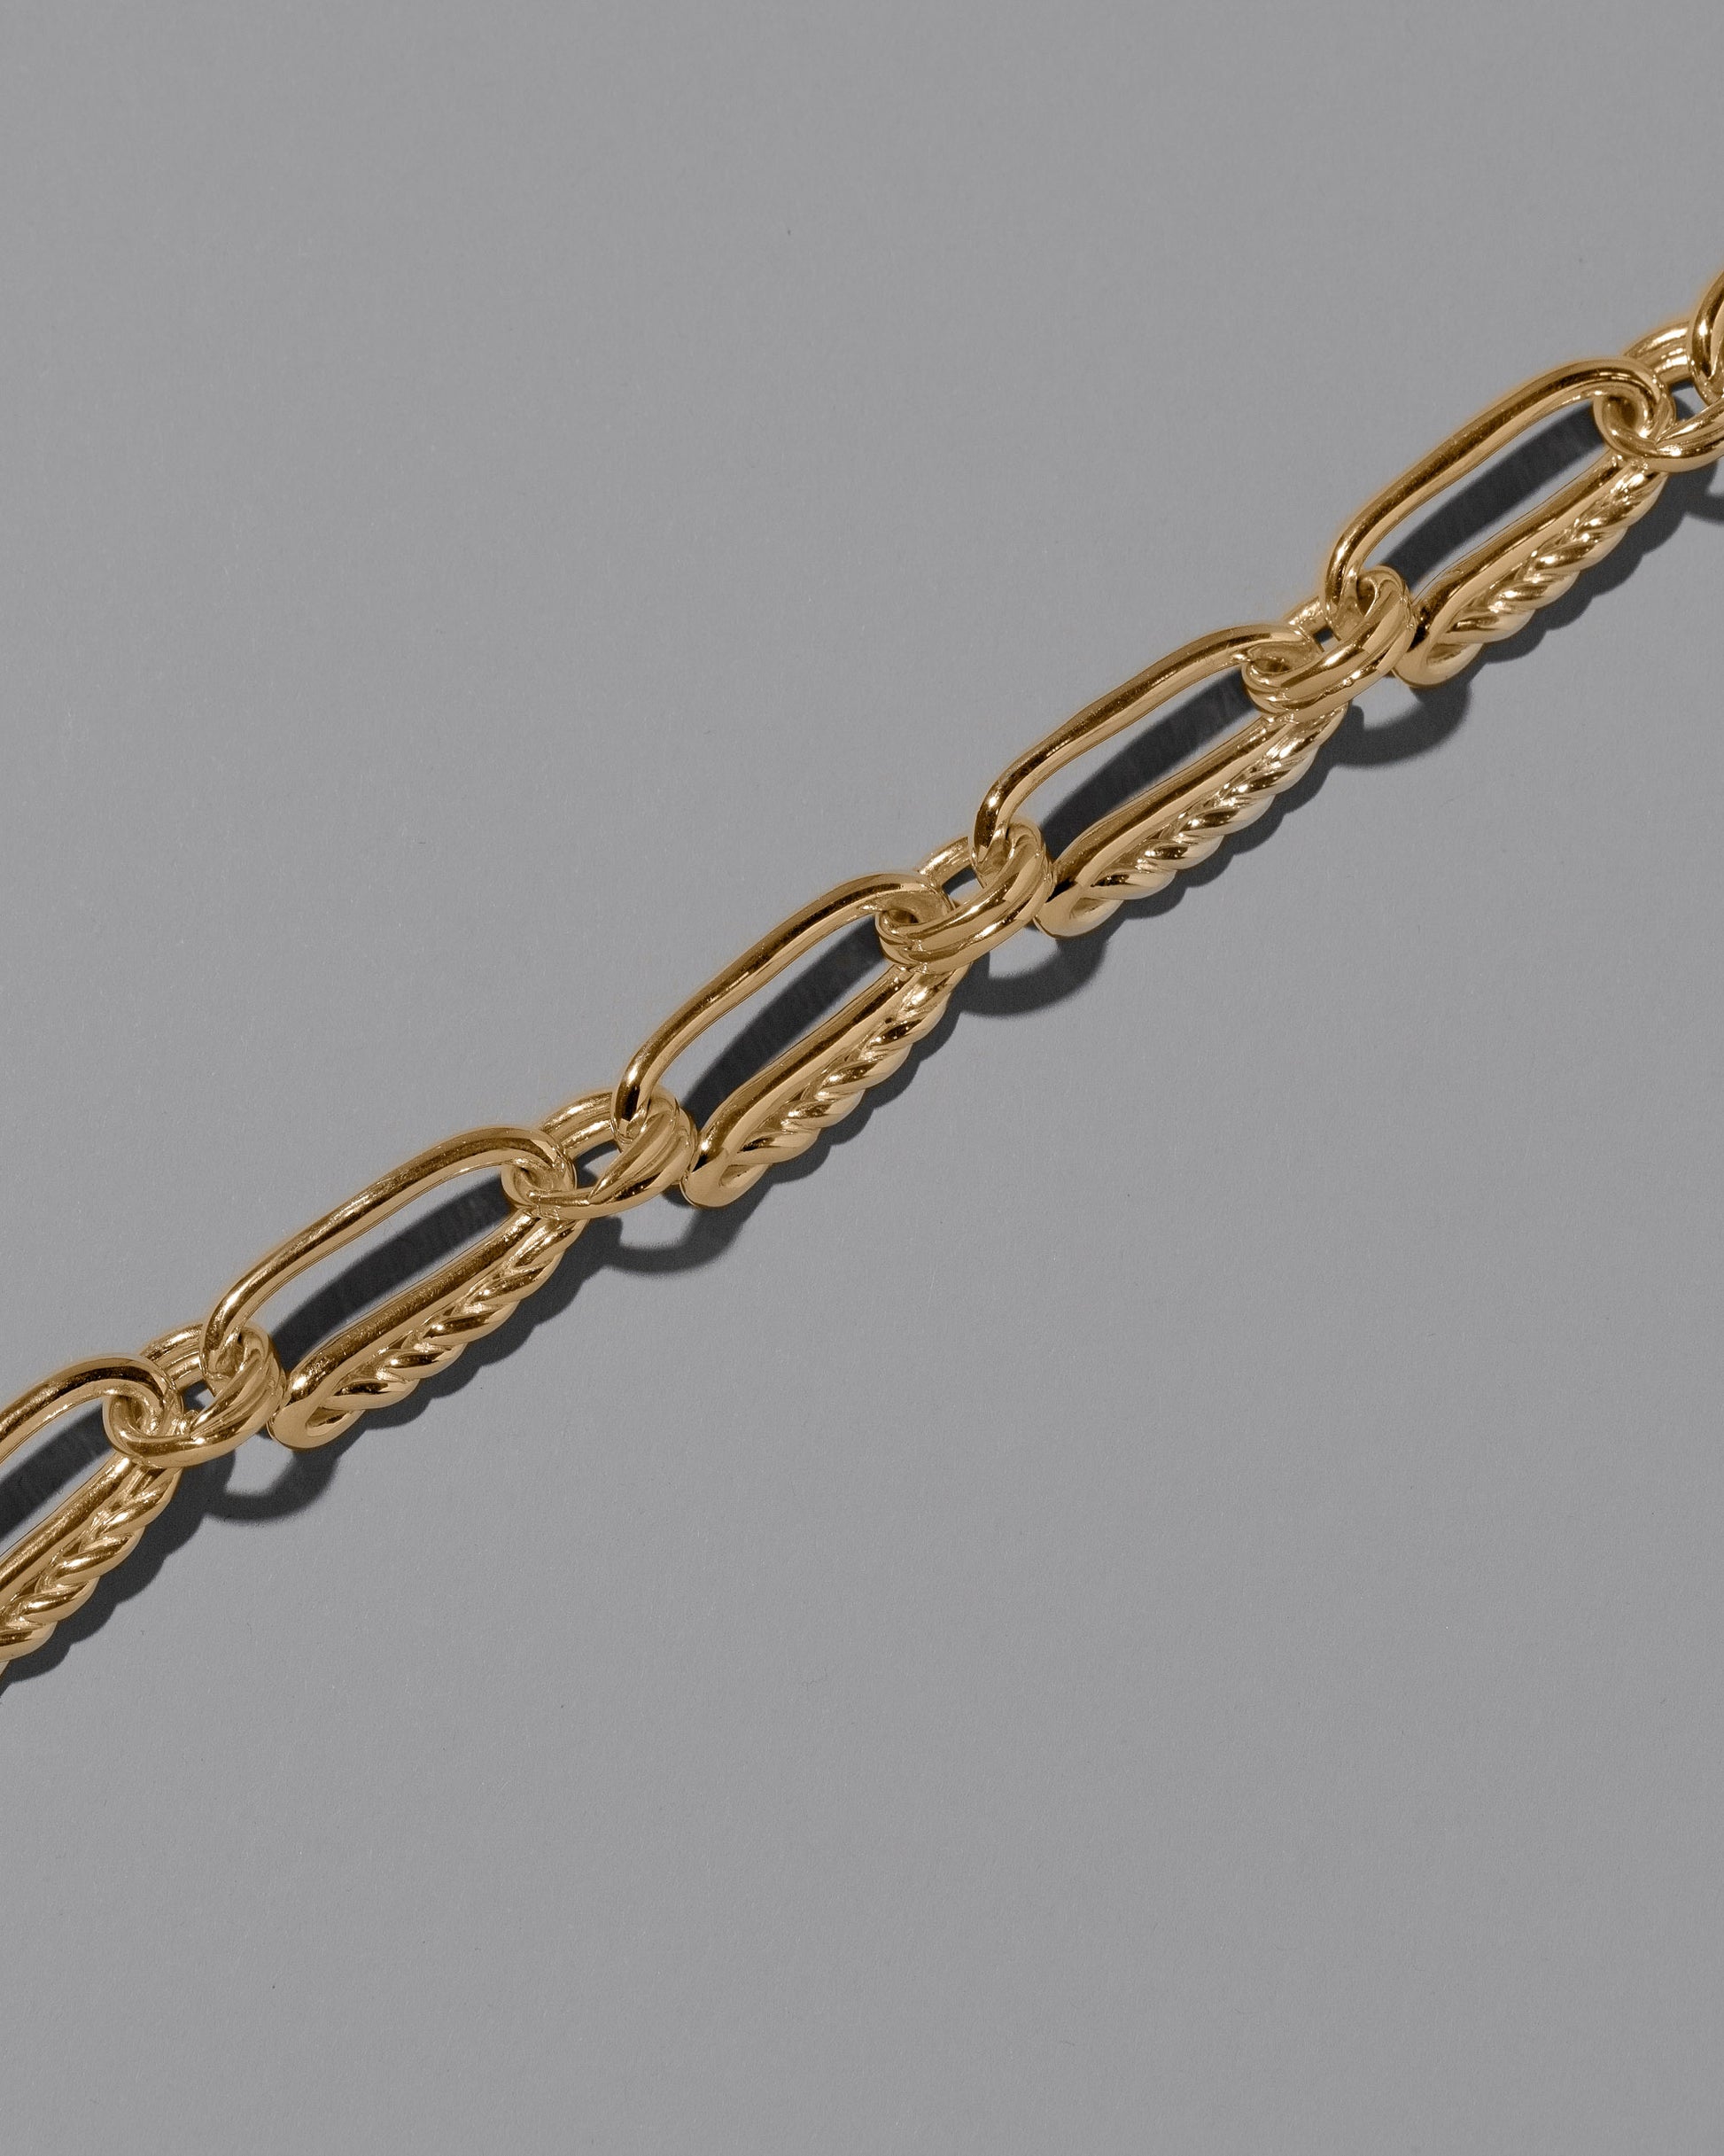 Closeup details of the CRZM 22k Gold Ophiolite Bracelet on light color background.